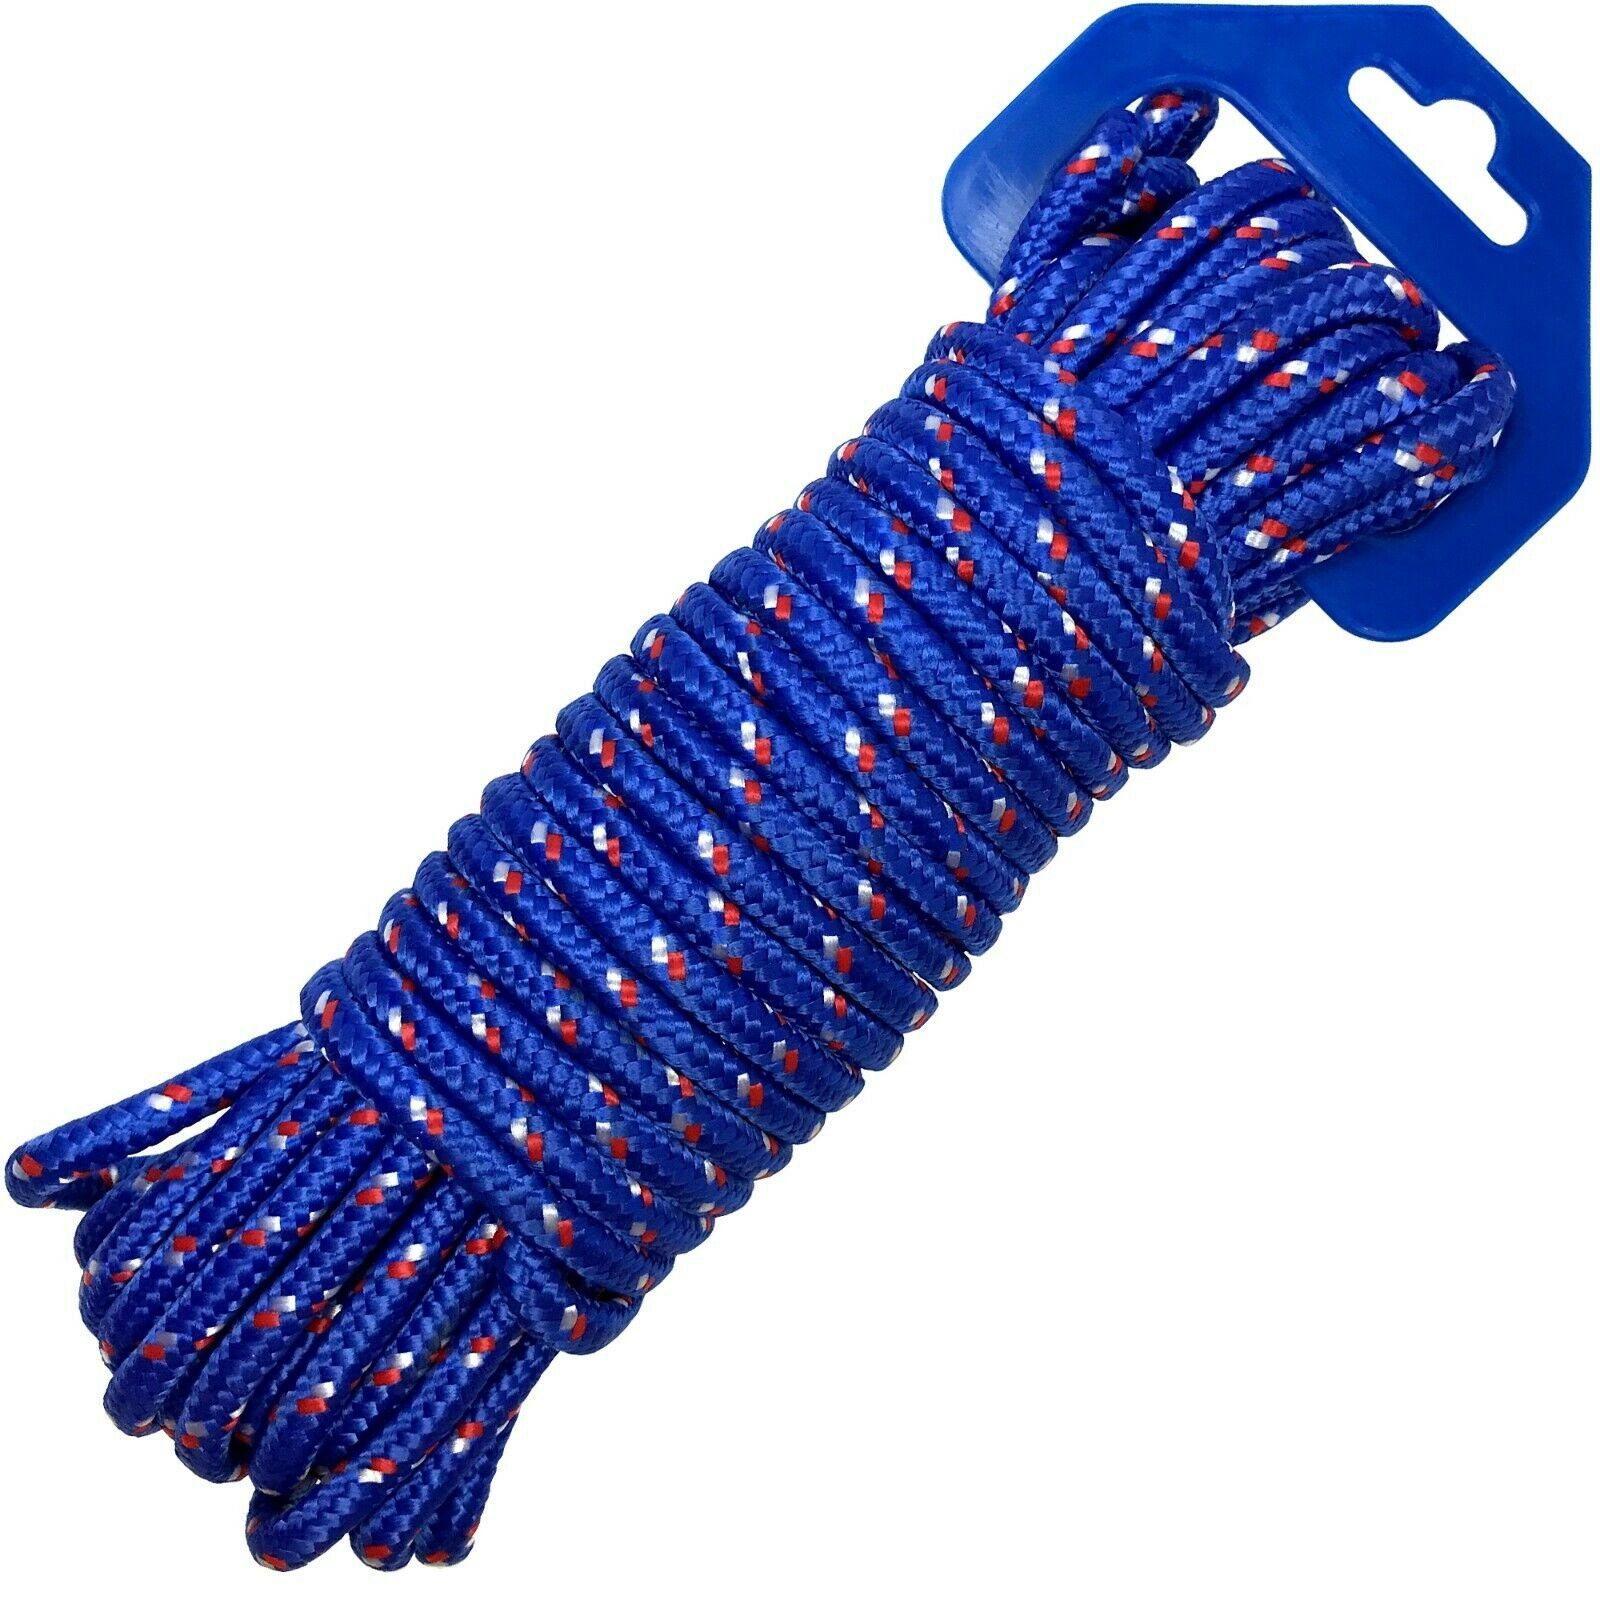 Osma »Allzweck Seil Transport Sicherung Seil 12m x 6mm« Seil, Schnur, Tau,  Leine, Tauwerk, blau online kaufen | OTTO